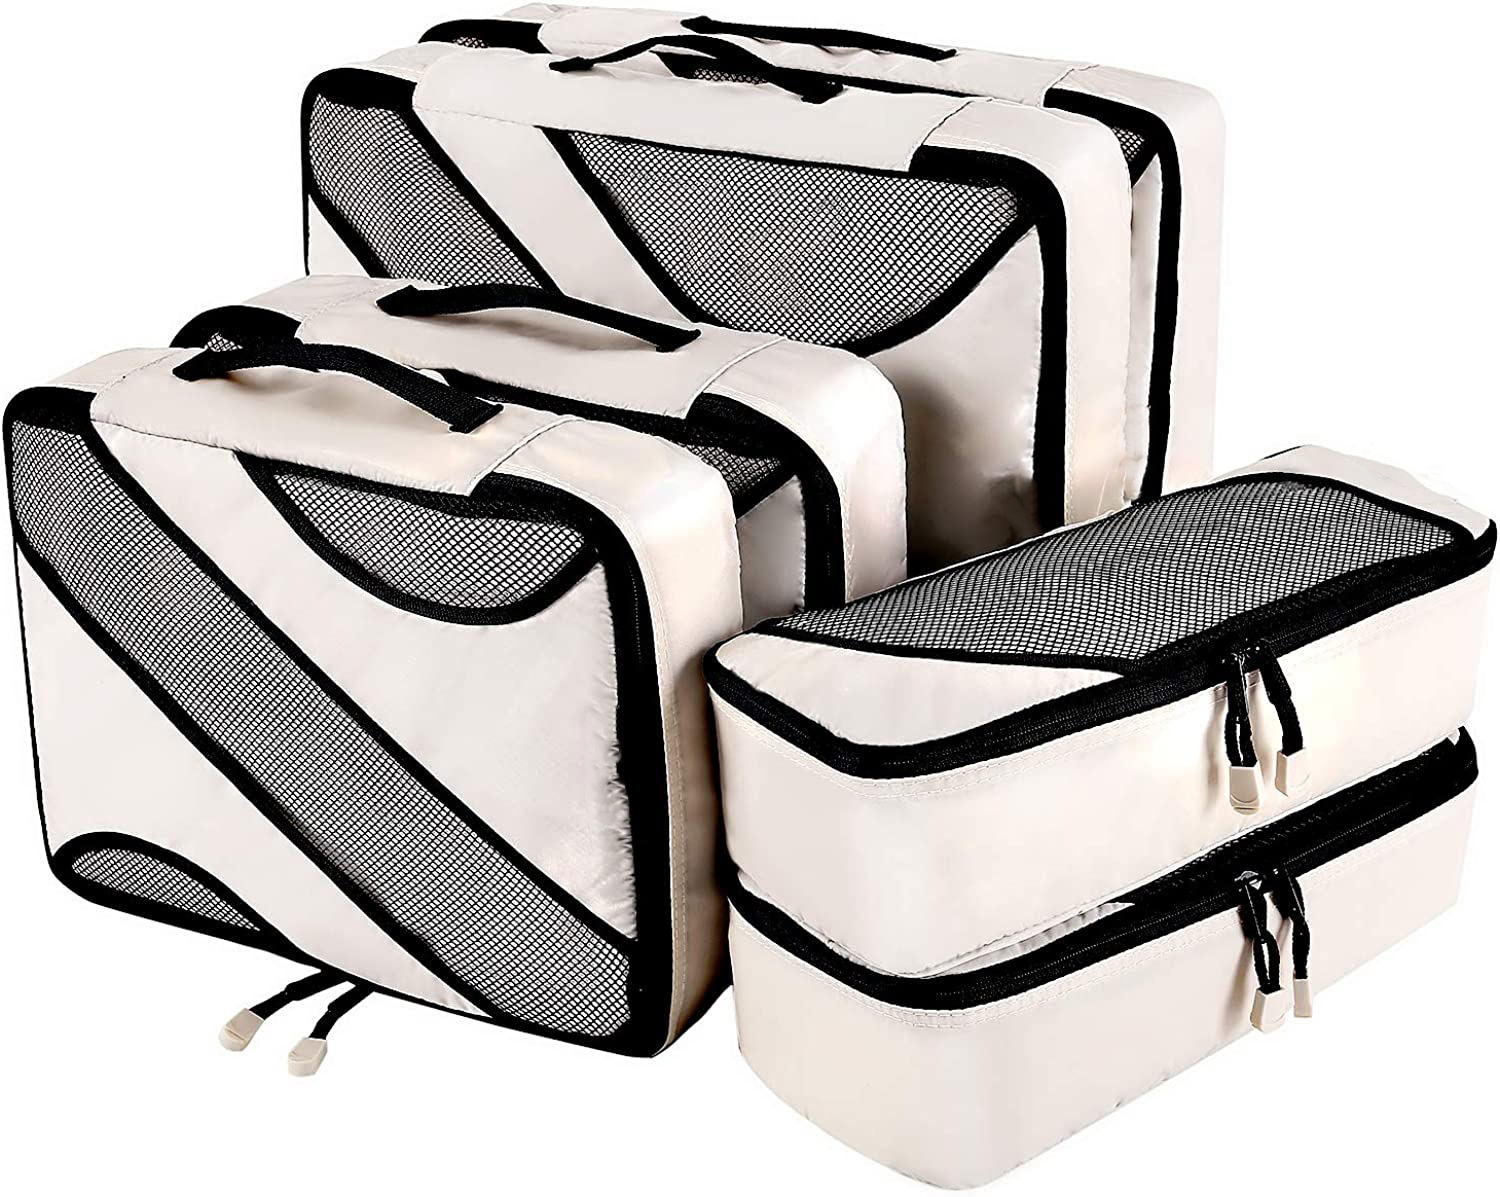 6 Set Packwürfel 3 verschiedene Größen Reisegepäck Verpackung Organizer Tasche Reisetasche Organizer für Kleidung Schuhe